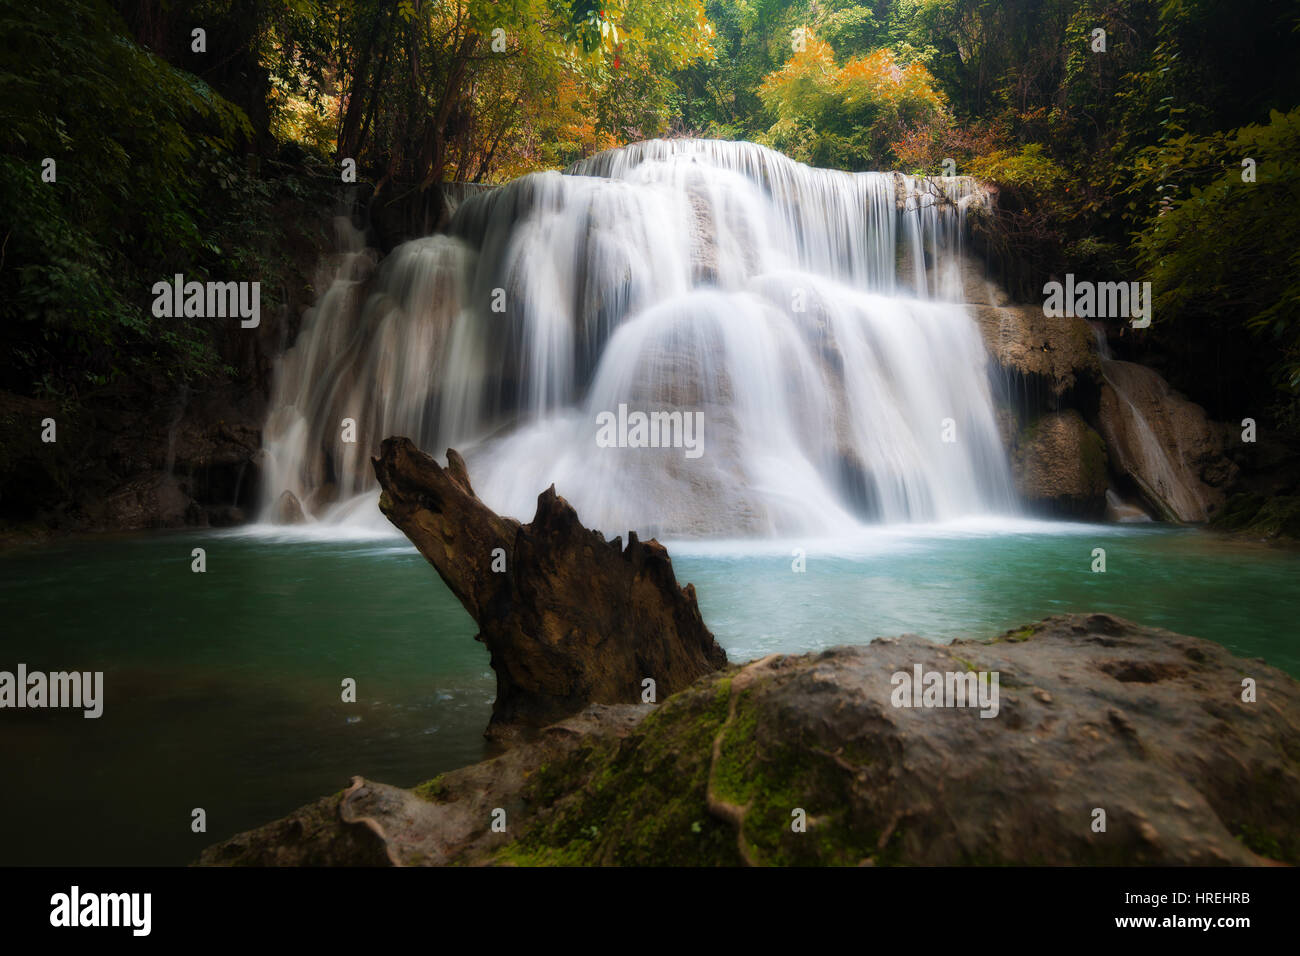 Huay MaeKamin Wasserfall ist schöner Wasserfall im herbstlichen Wald, Provinz Kanchanaburi, Thailand. Stockfoto